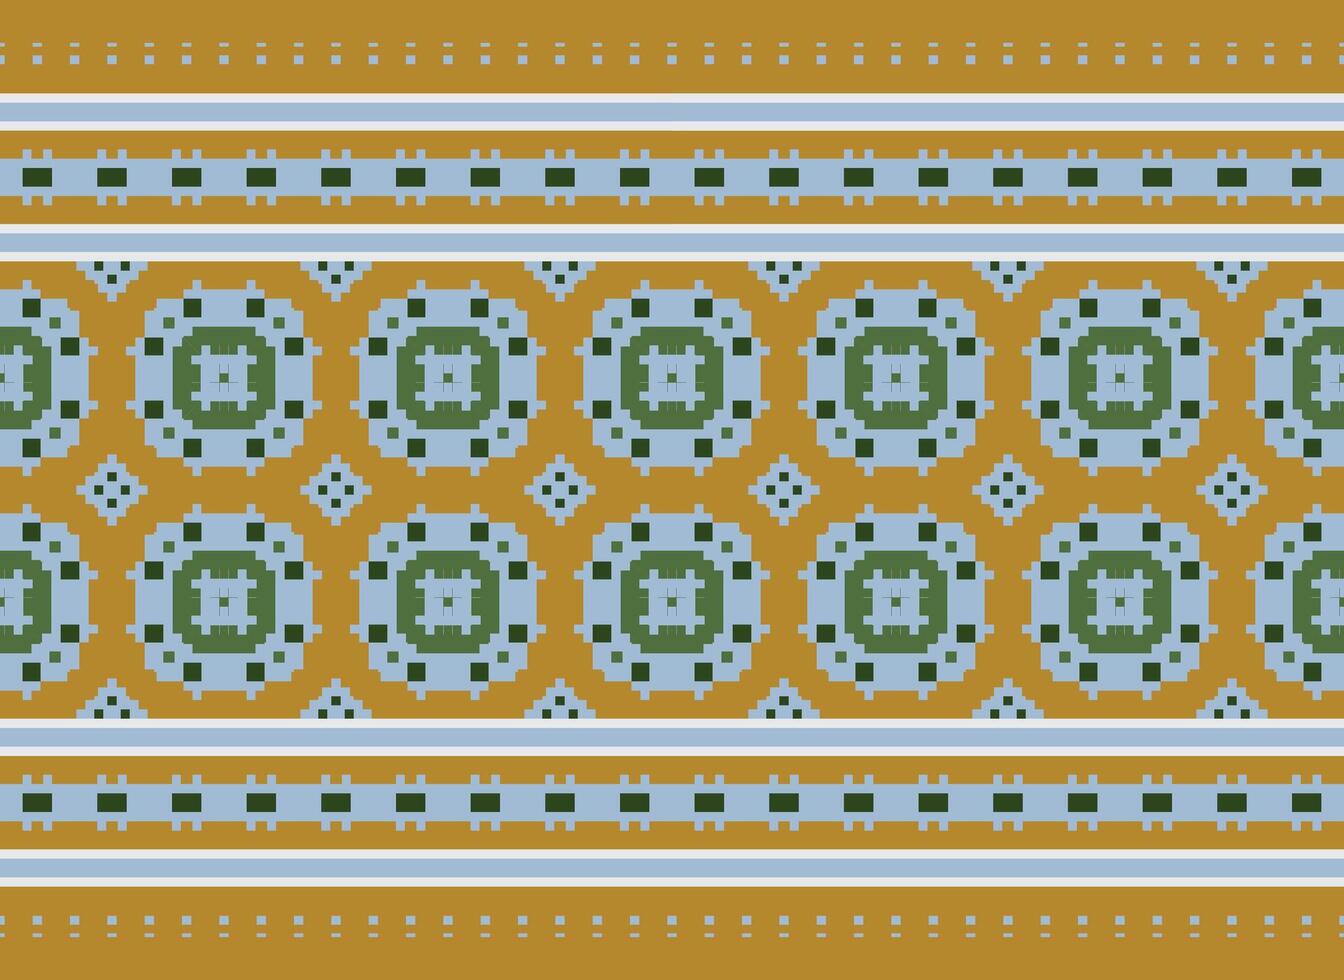 américain ethnique originaire de motif.traditionnel Navajo, aztèque, apache, sud-ouest et mexicain style en tissu pattern.abstract motifs conception des motifs pour tissu, vêtements, couverture, tapis, tissé, emballage, décoration vecteur